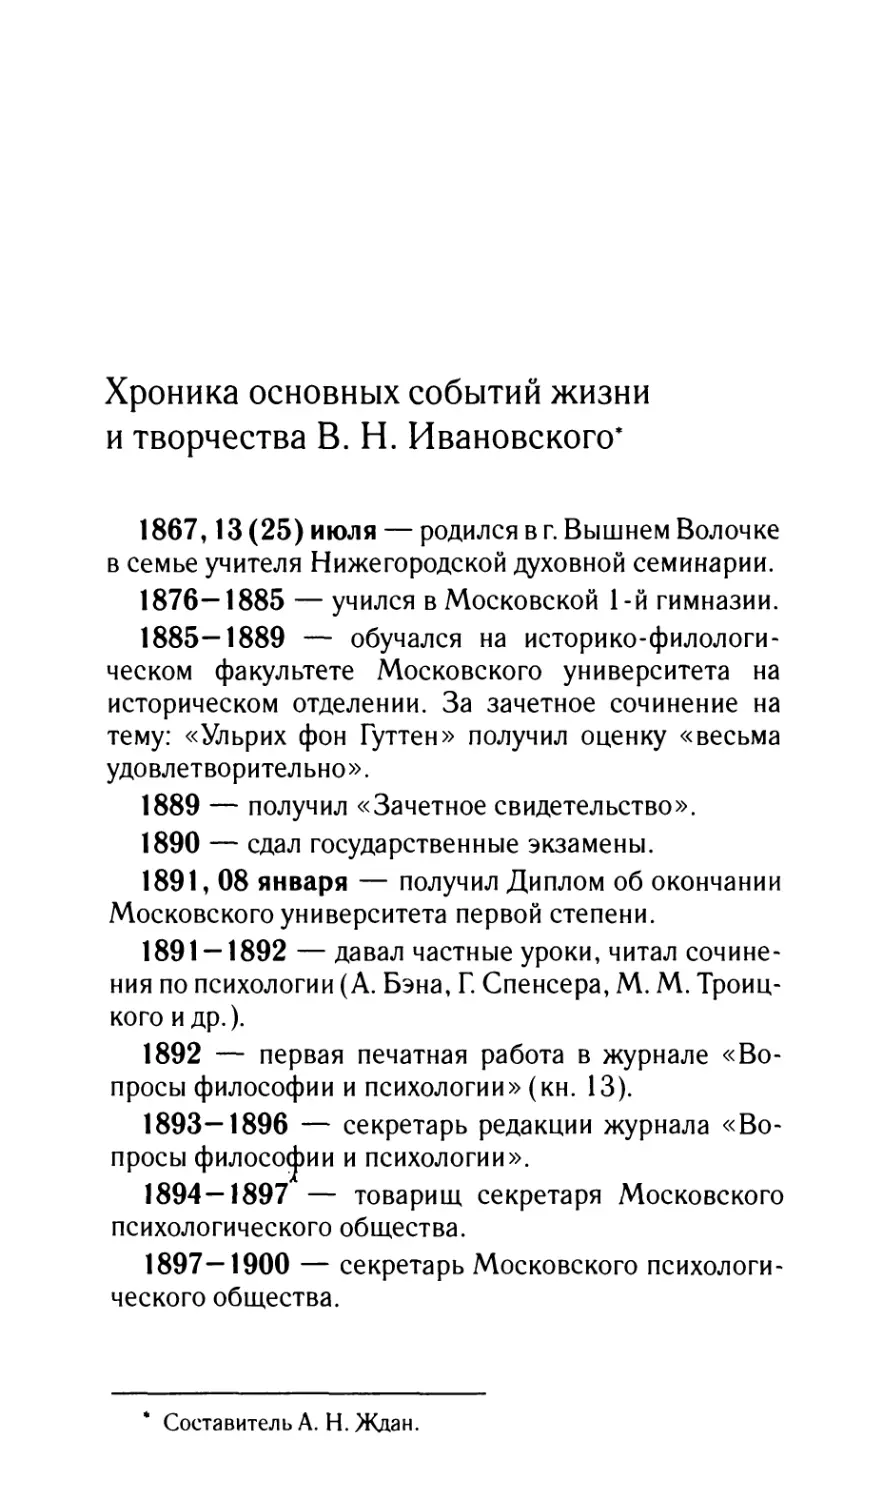 Хроника основных событий жизни и творчества В.Н. Ивановского